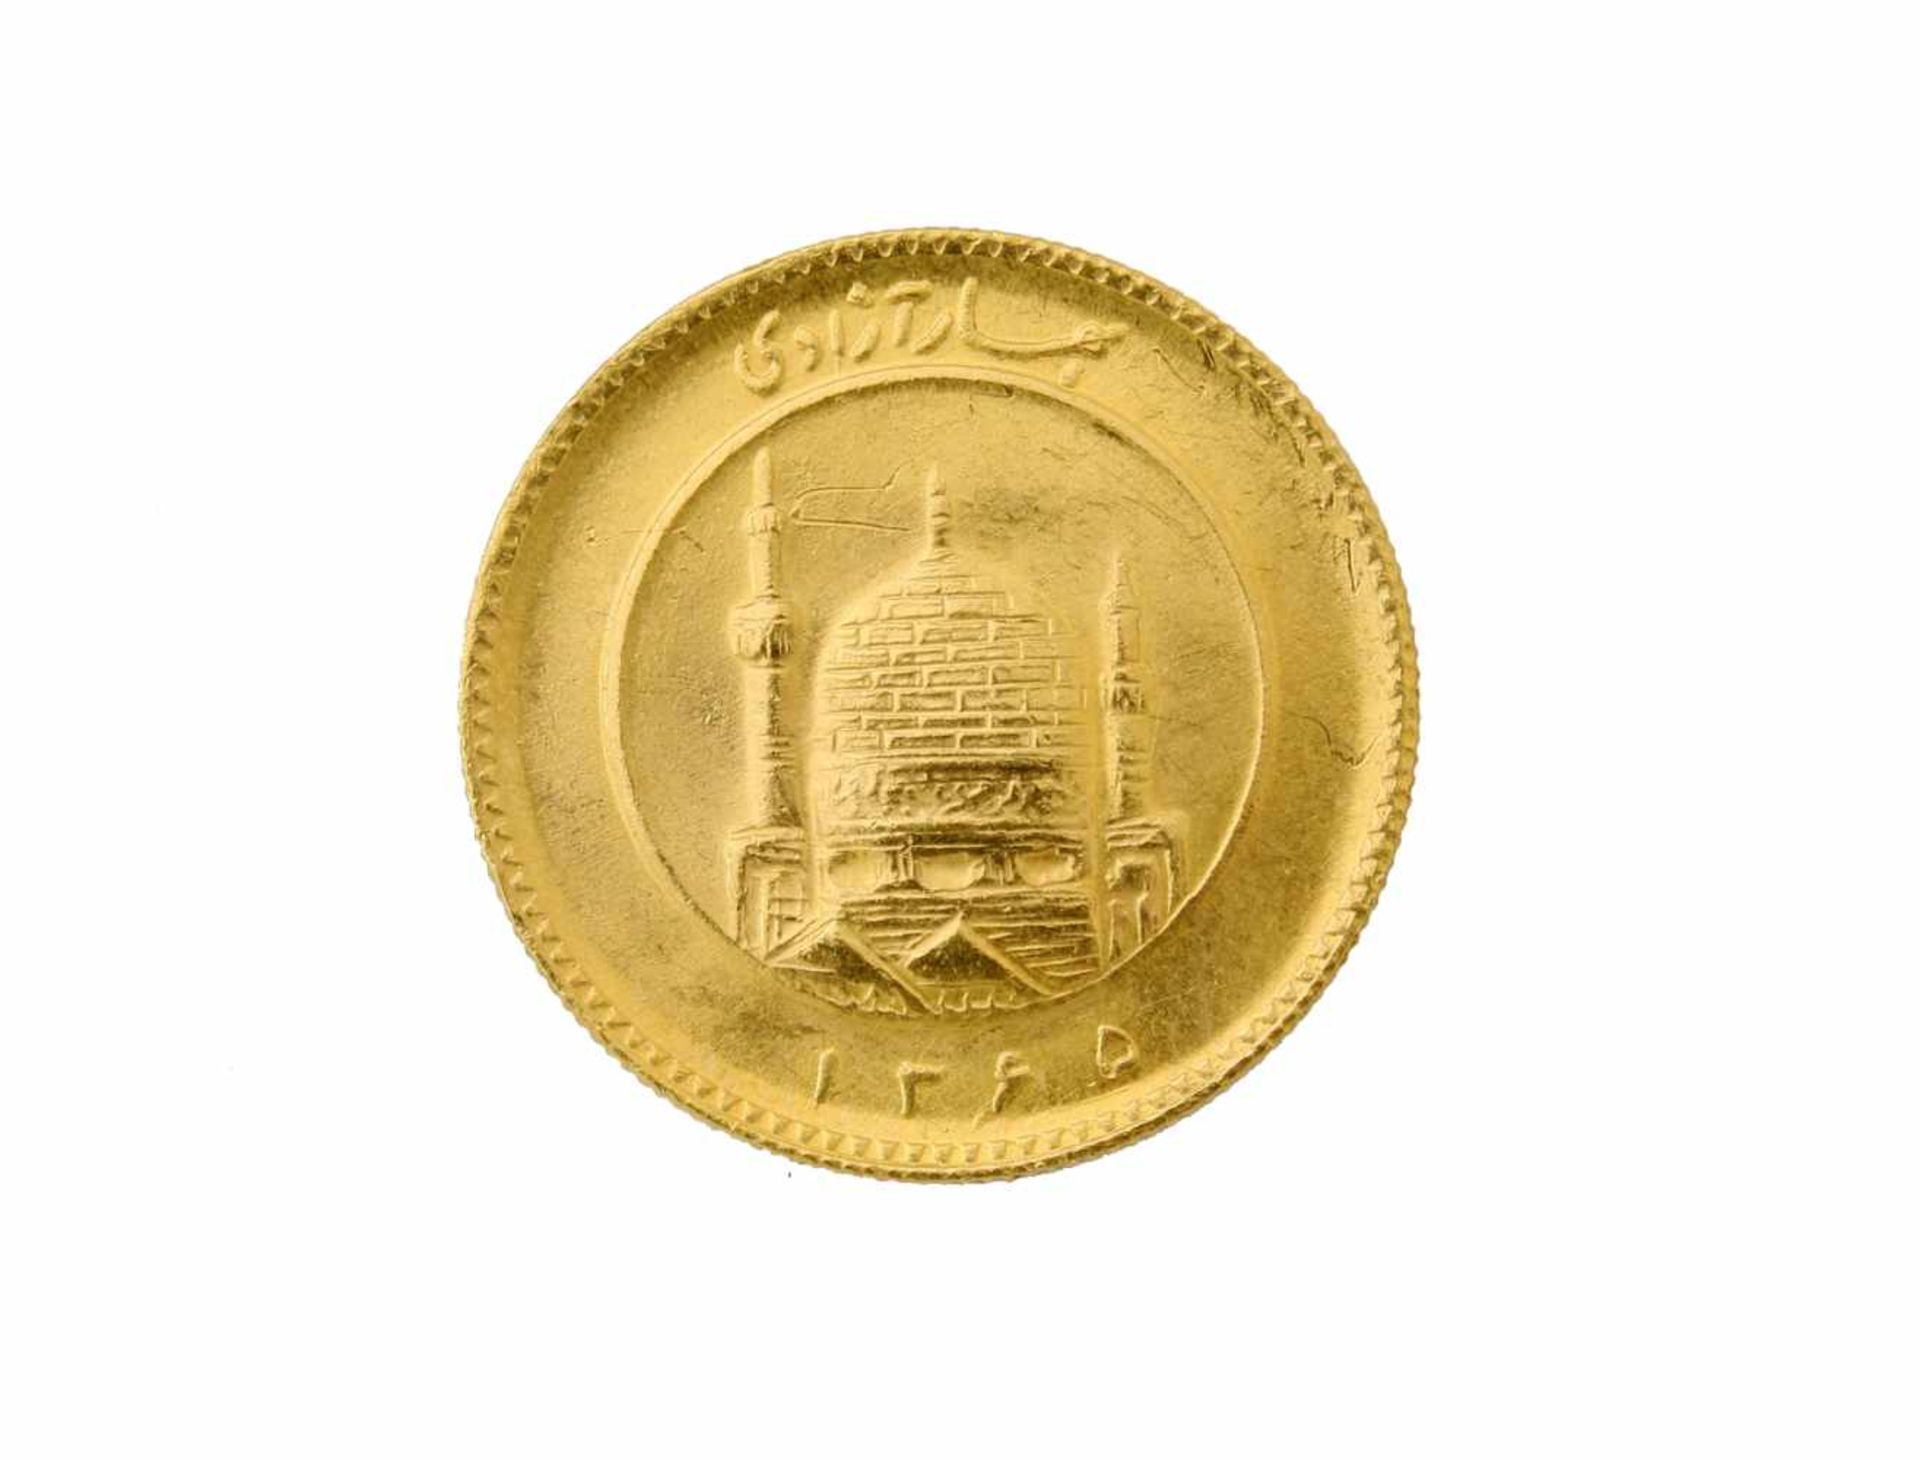 Goldmünze 1 Pahlavi - Persien 1945Vorzüglich erhalten, 900er, 8,1 g., arabisches Jahr 1365 = 1945.